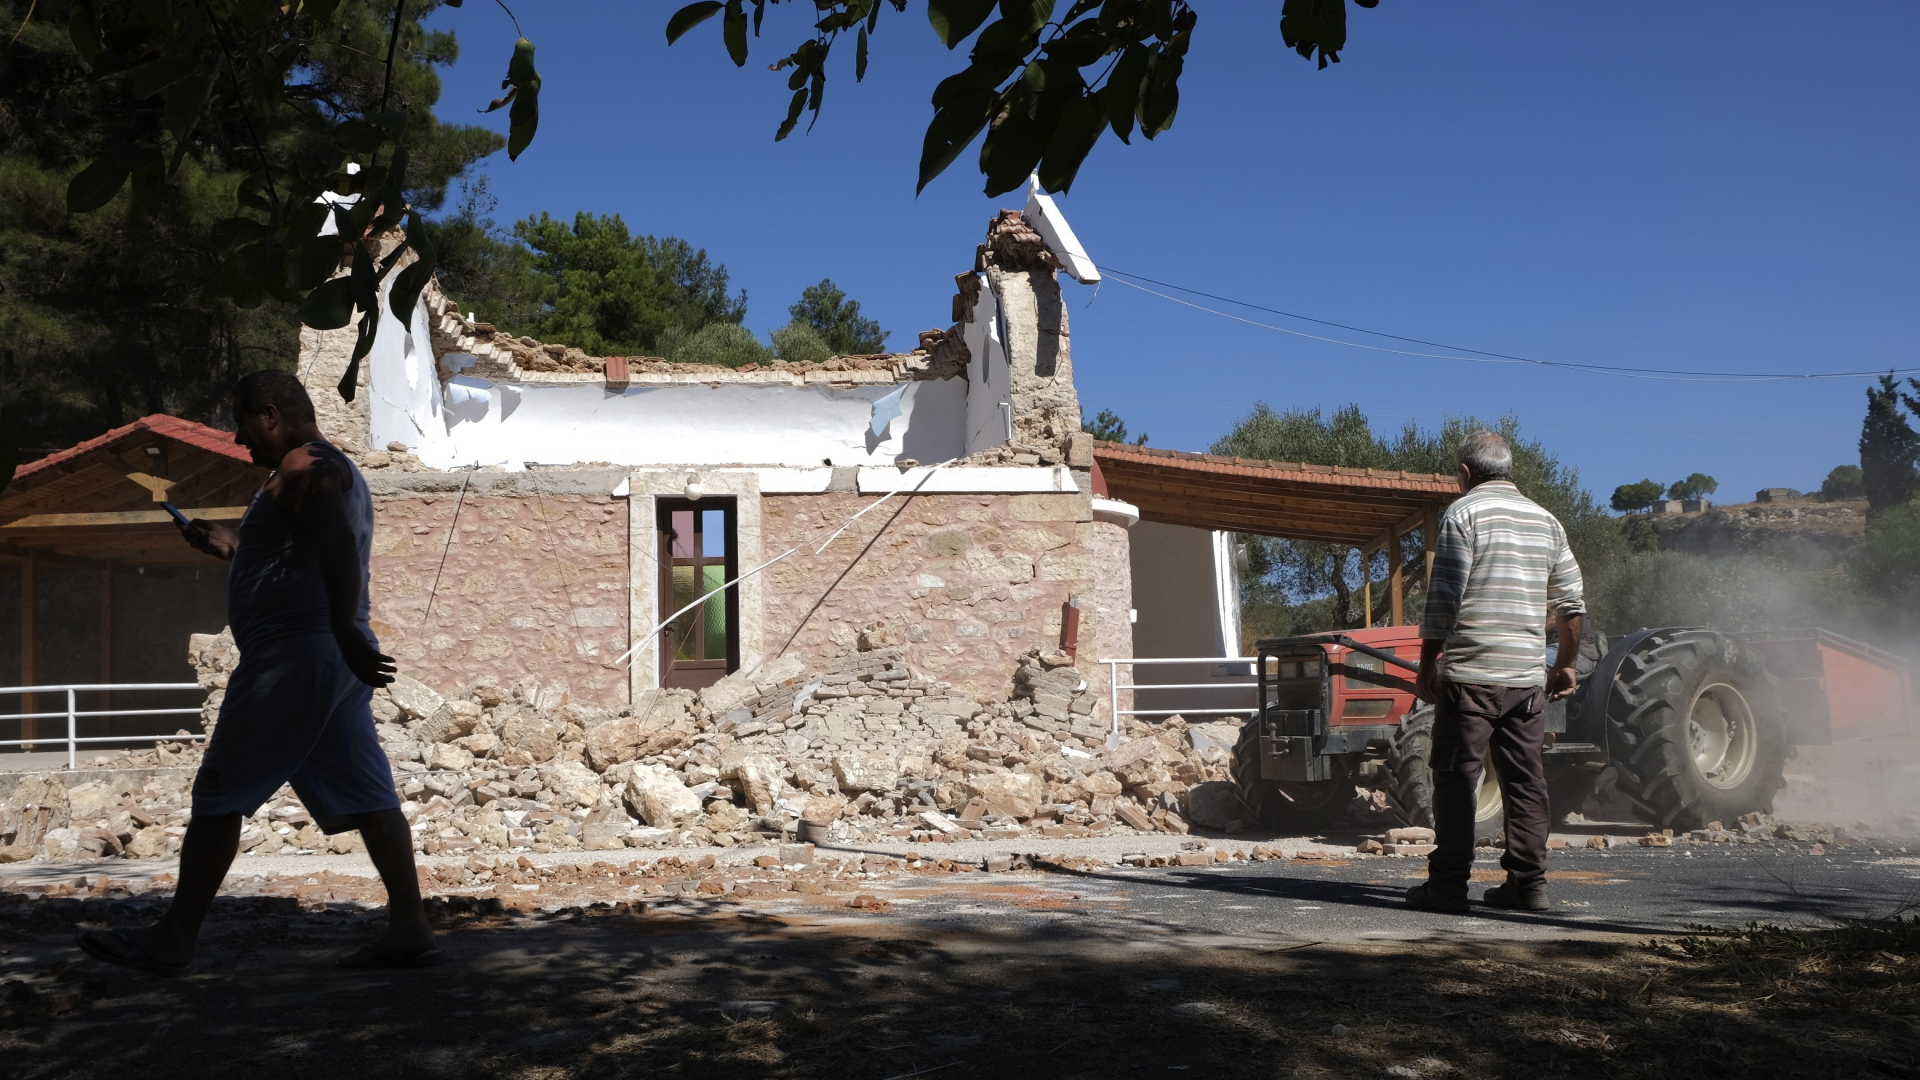 Anwohner gehen an einer beschädigten Kapelle vorüber, nachdem die Insel Kreta von einem Erdbeben erschüttert wurde.  | dpa